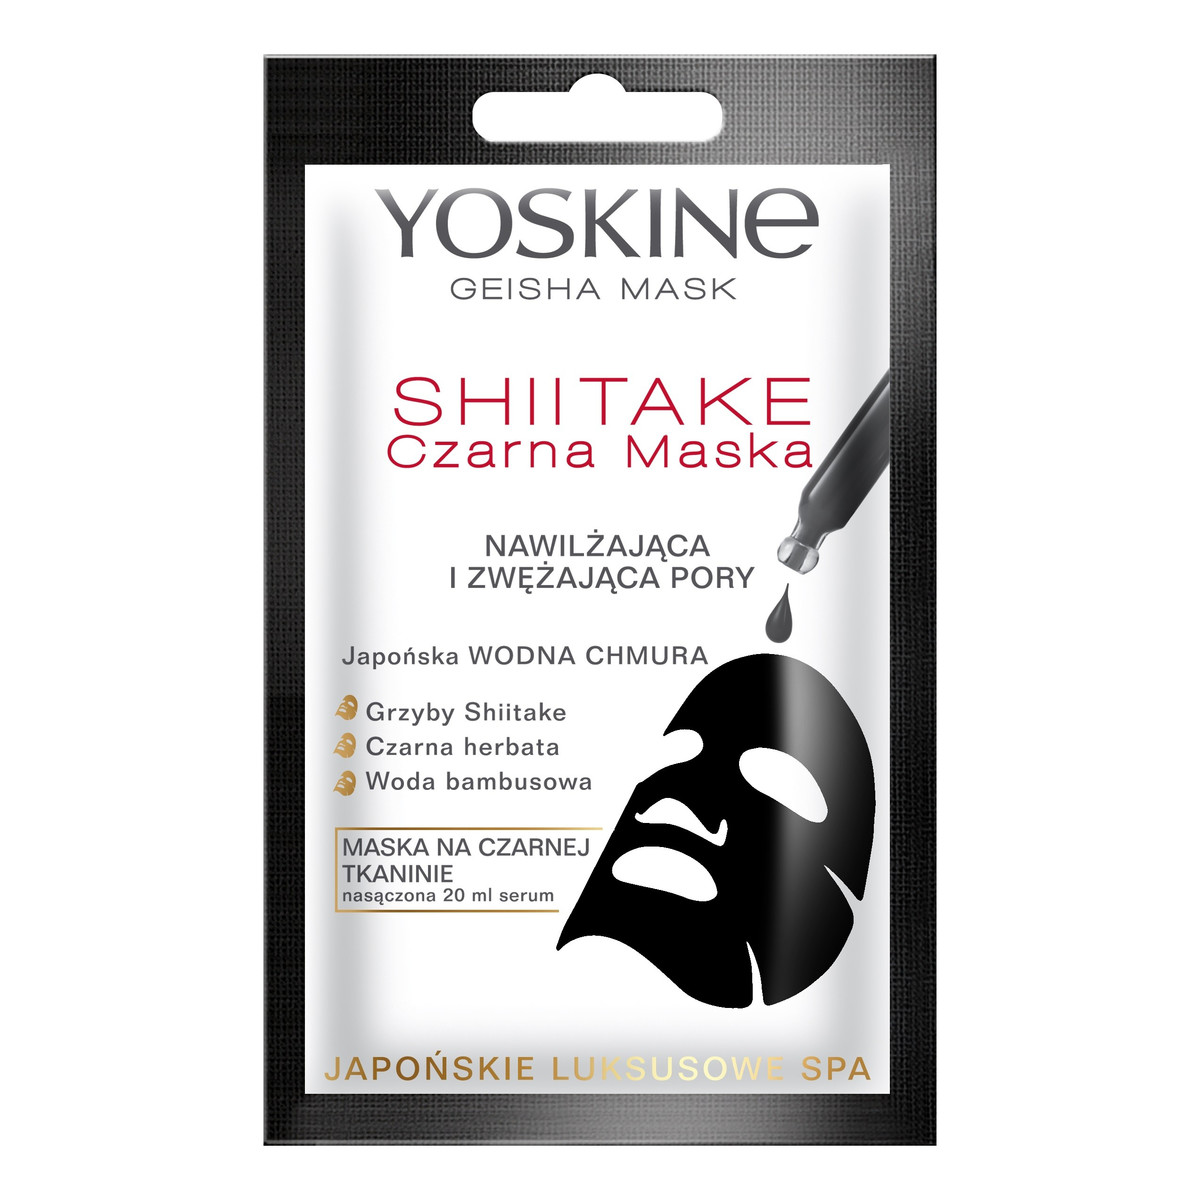 Yoskine Geisha Mask Shiitake Czarna Maska na tkaninie nawilżająca i zwężająca pory 20ml